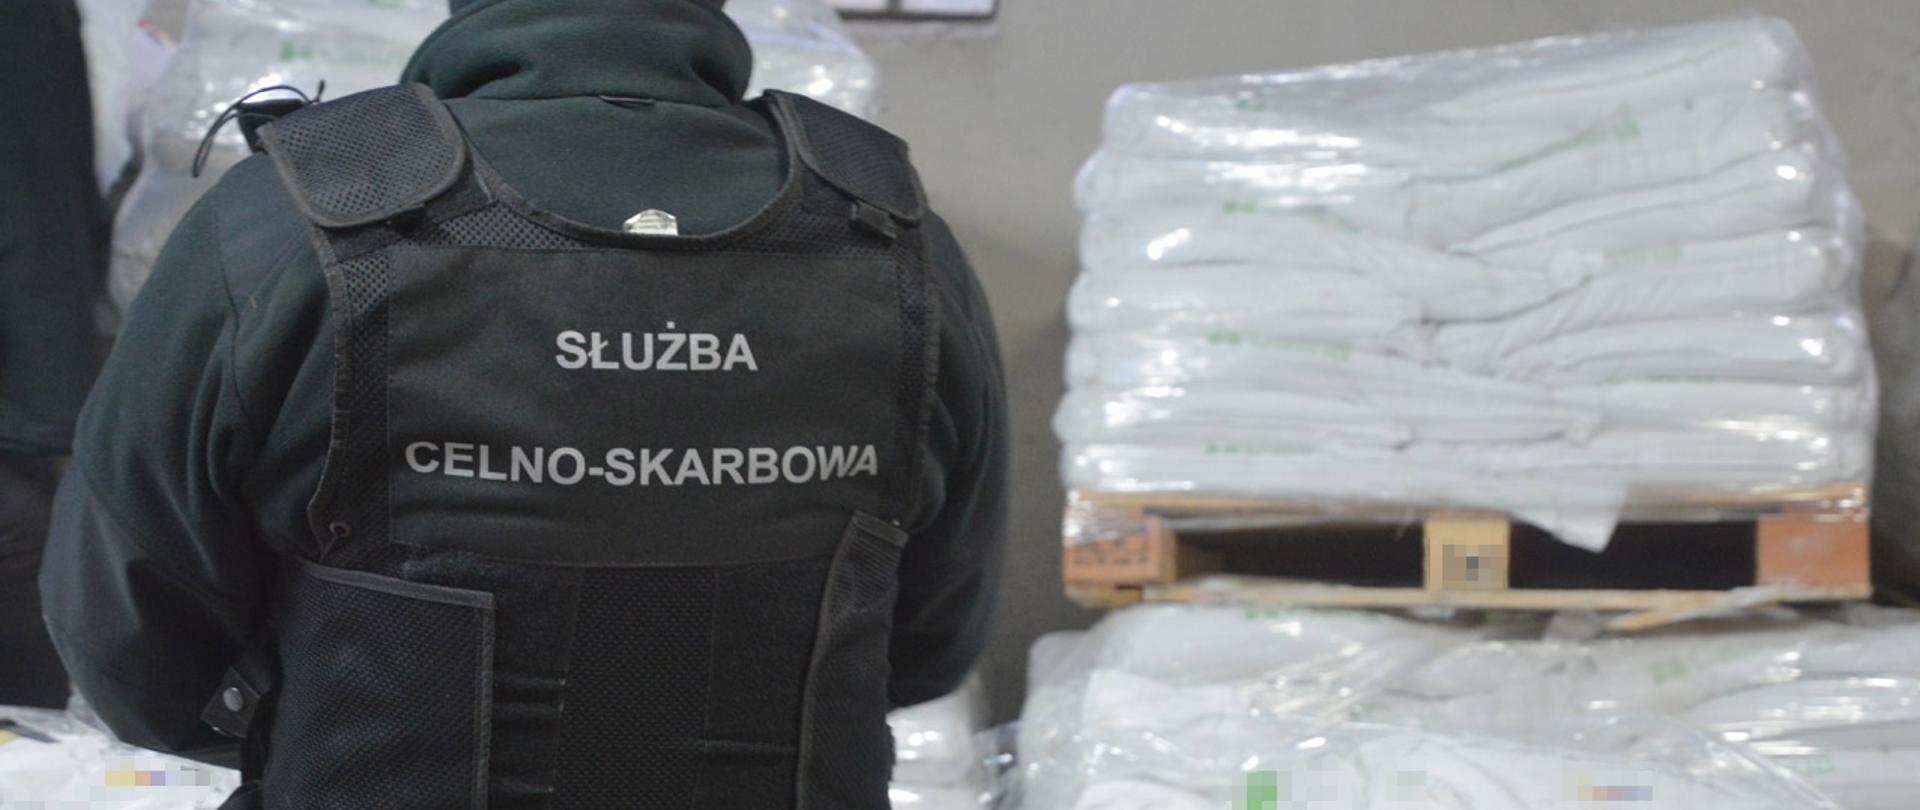 Funkcjonariusz Służby Celno-Skarbowej stojący tyłem, w tle zabezpieczone narkotyki.